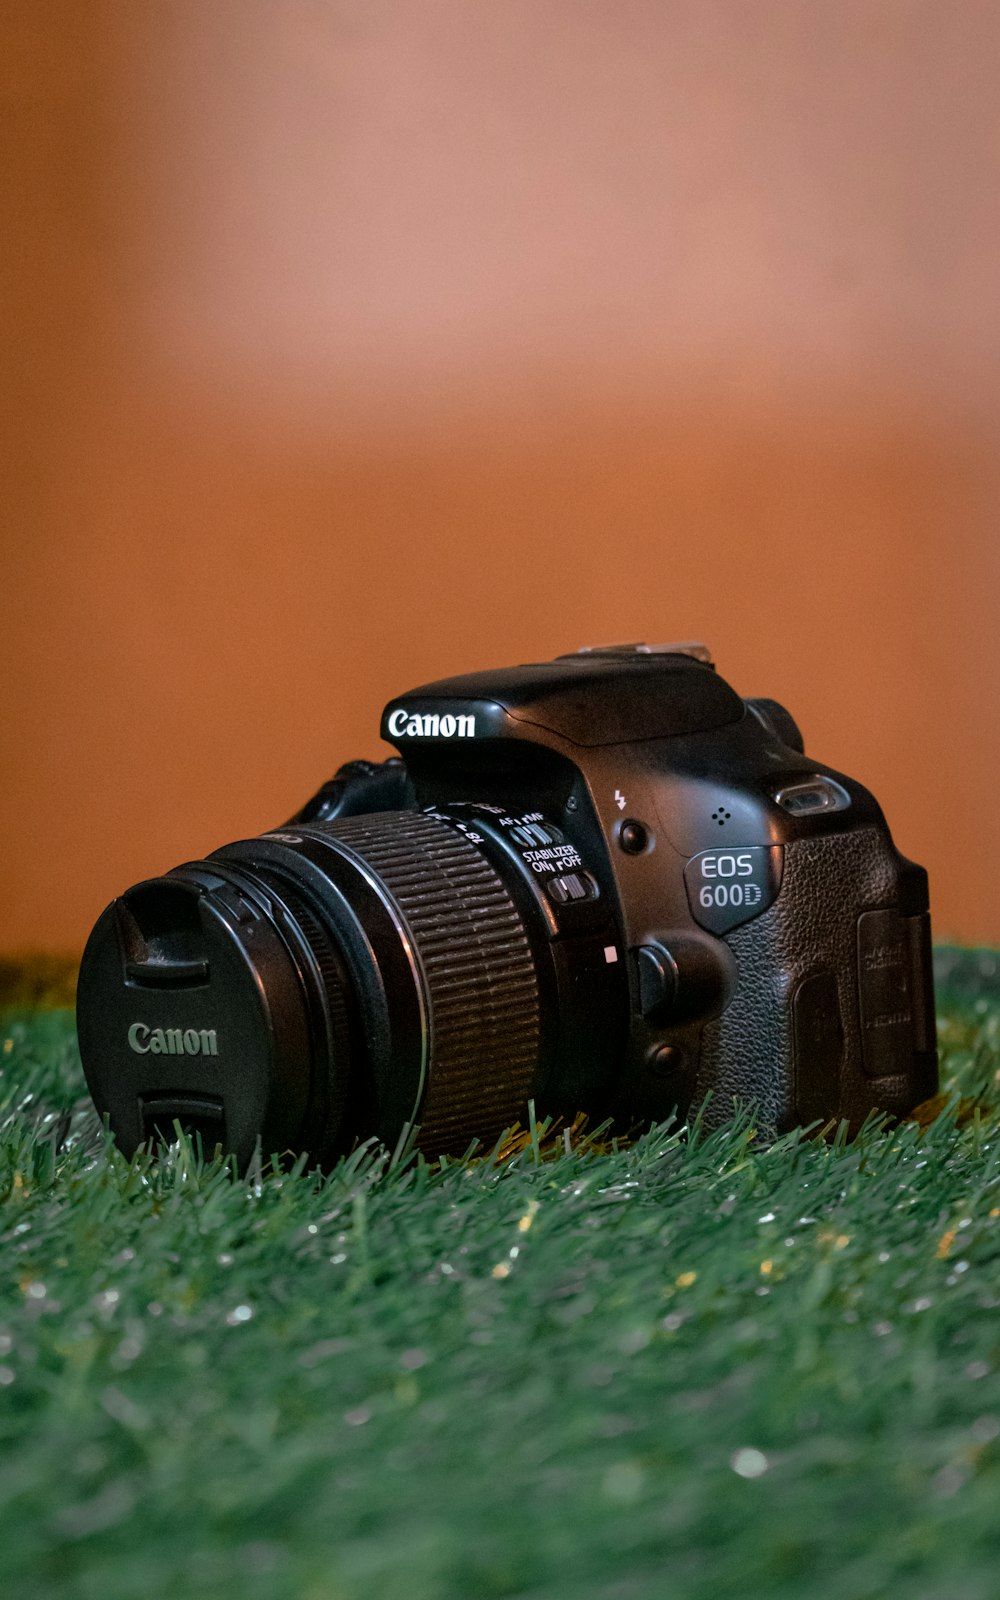 Imágenes de Canon 600d | Descarga imágenes gratuitas en Unsplash